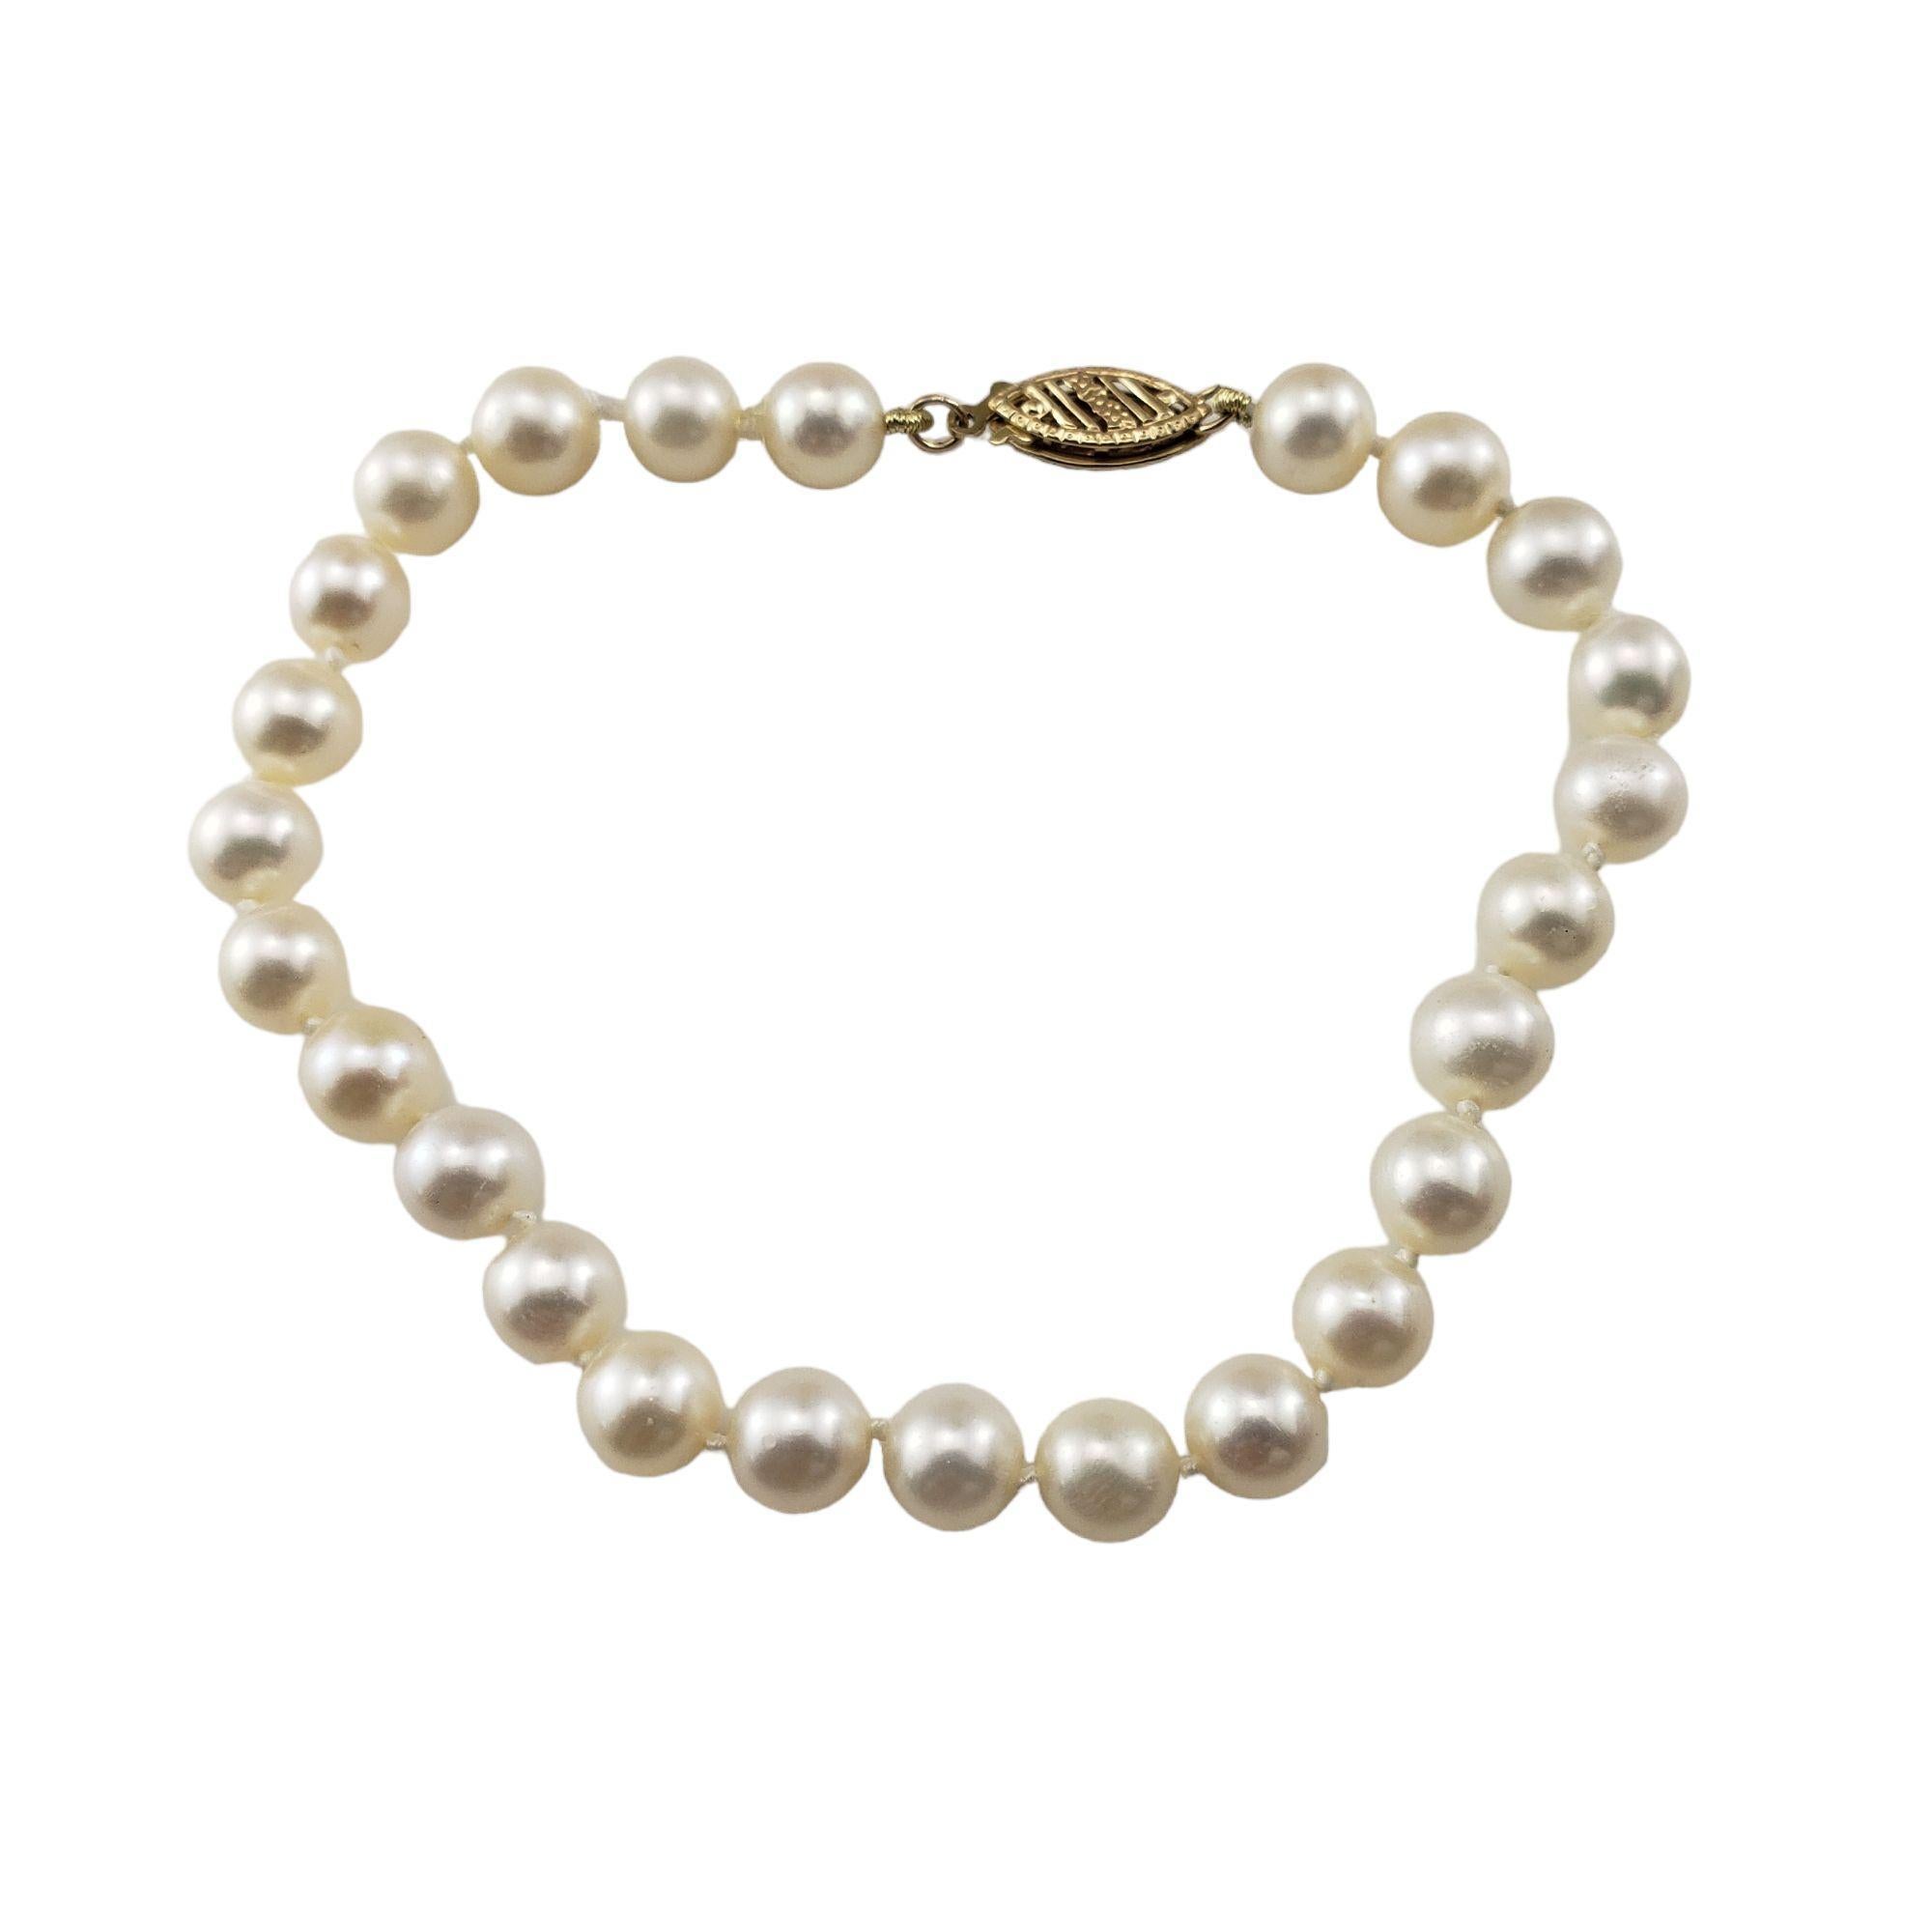  14 Karat Gelbgold Perlenarmband-

Dieses elegante Armband besteht aus 25 runden weißen Perlen (je 6 mm), die mit einem Verschluss aus 14 Karat Gelbgold versehen sind.

Größe: 6,75 Zoll

Gewicht: 5,4 dwt. / 8,5 gr.

Gestempelt: 14K RTI

Sehr guter